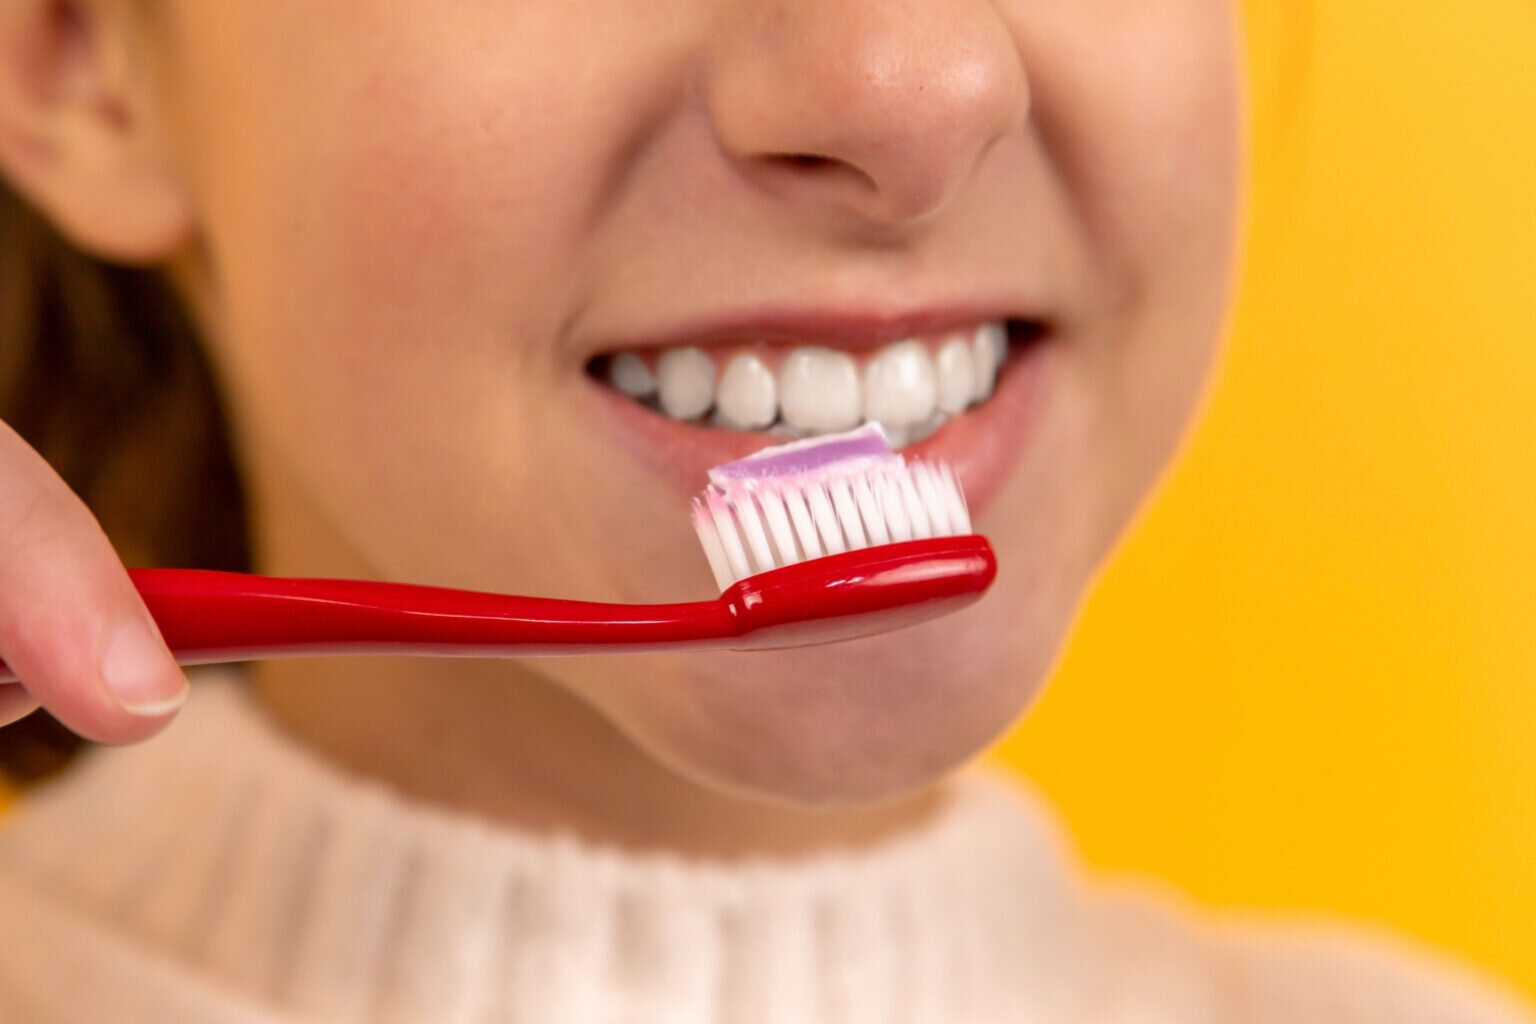 Sherman Oaks cosmetic dentistry patient model brushing her teeth teeth